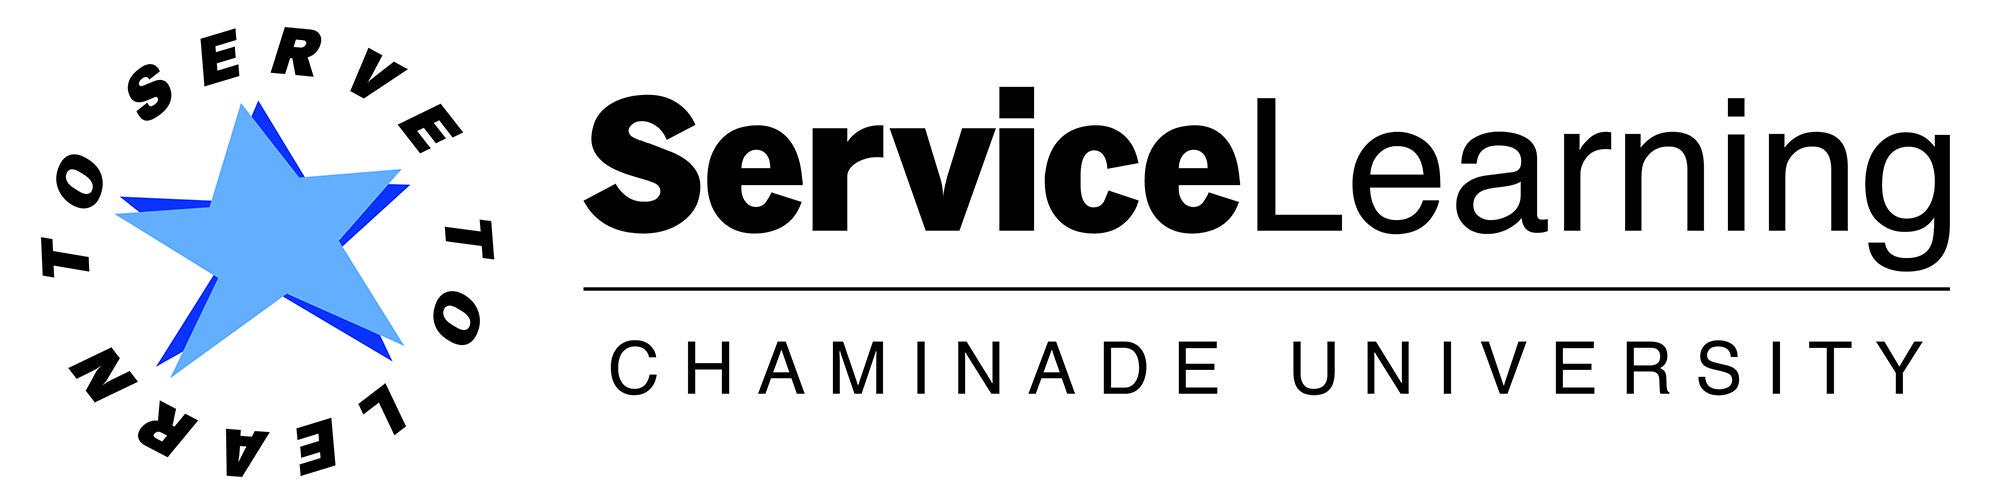 University of Learning Logo - Service-Learning | Chaminade University of Honolulu